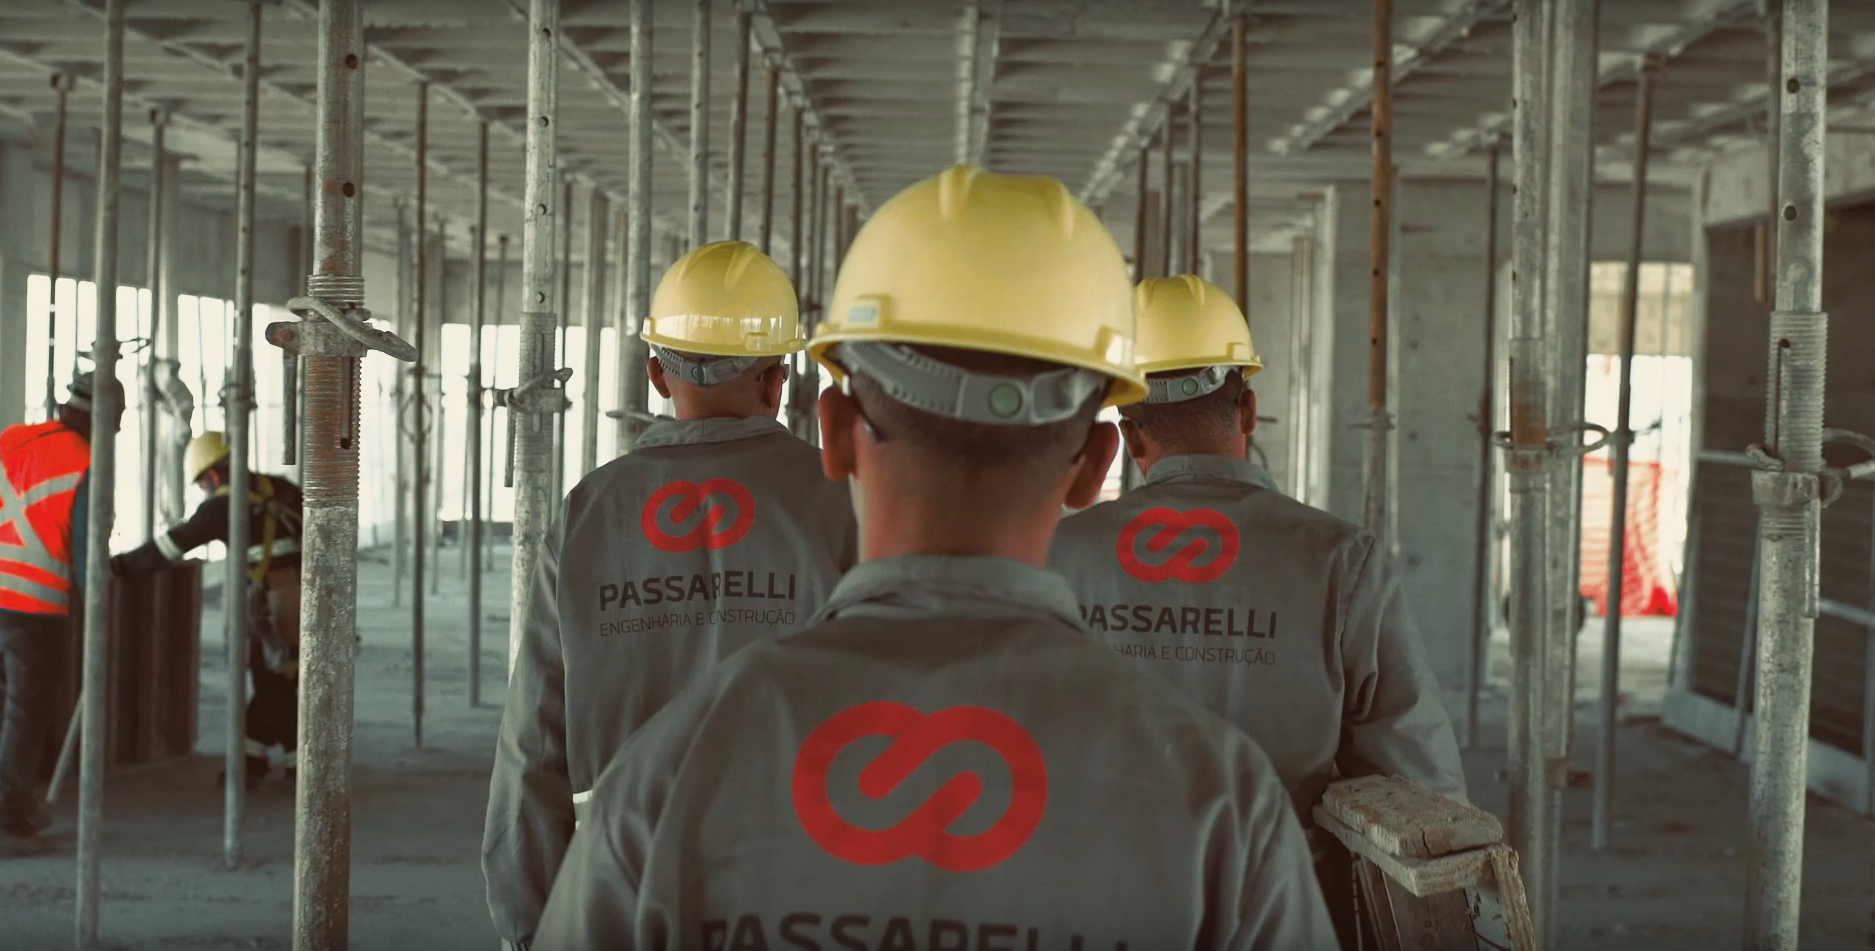 Passarelli abre processo seletivo para diversas oportunidades de emprego em vários estados do Brasil